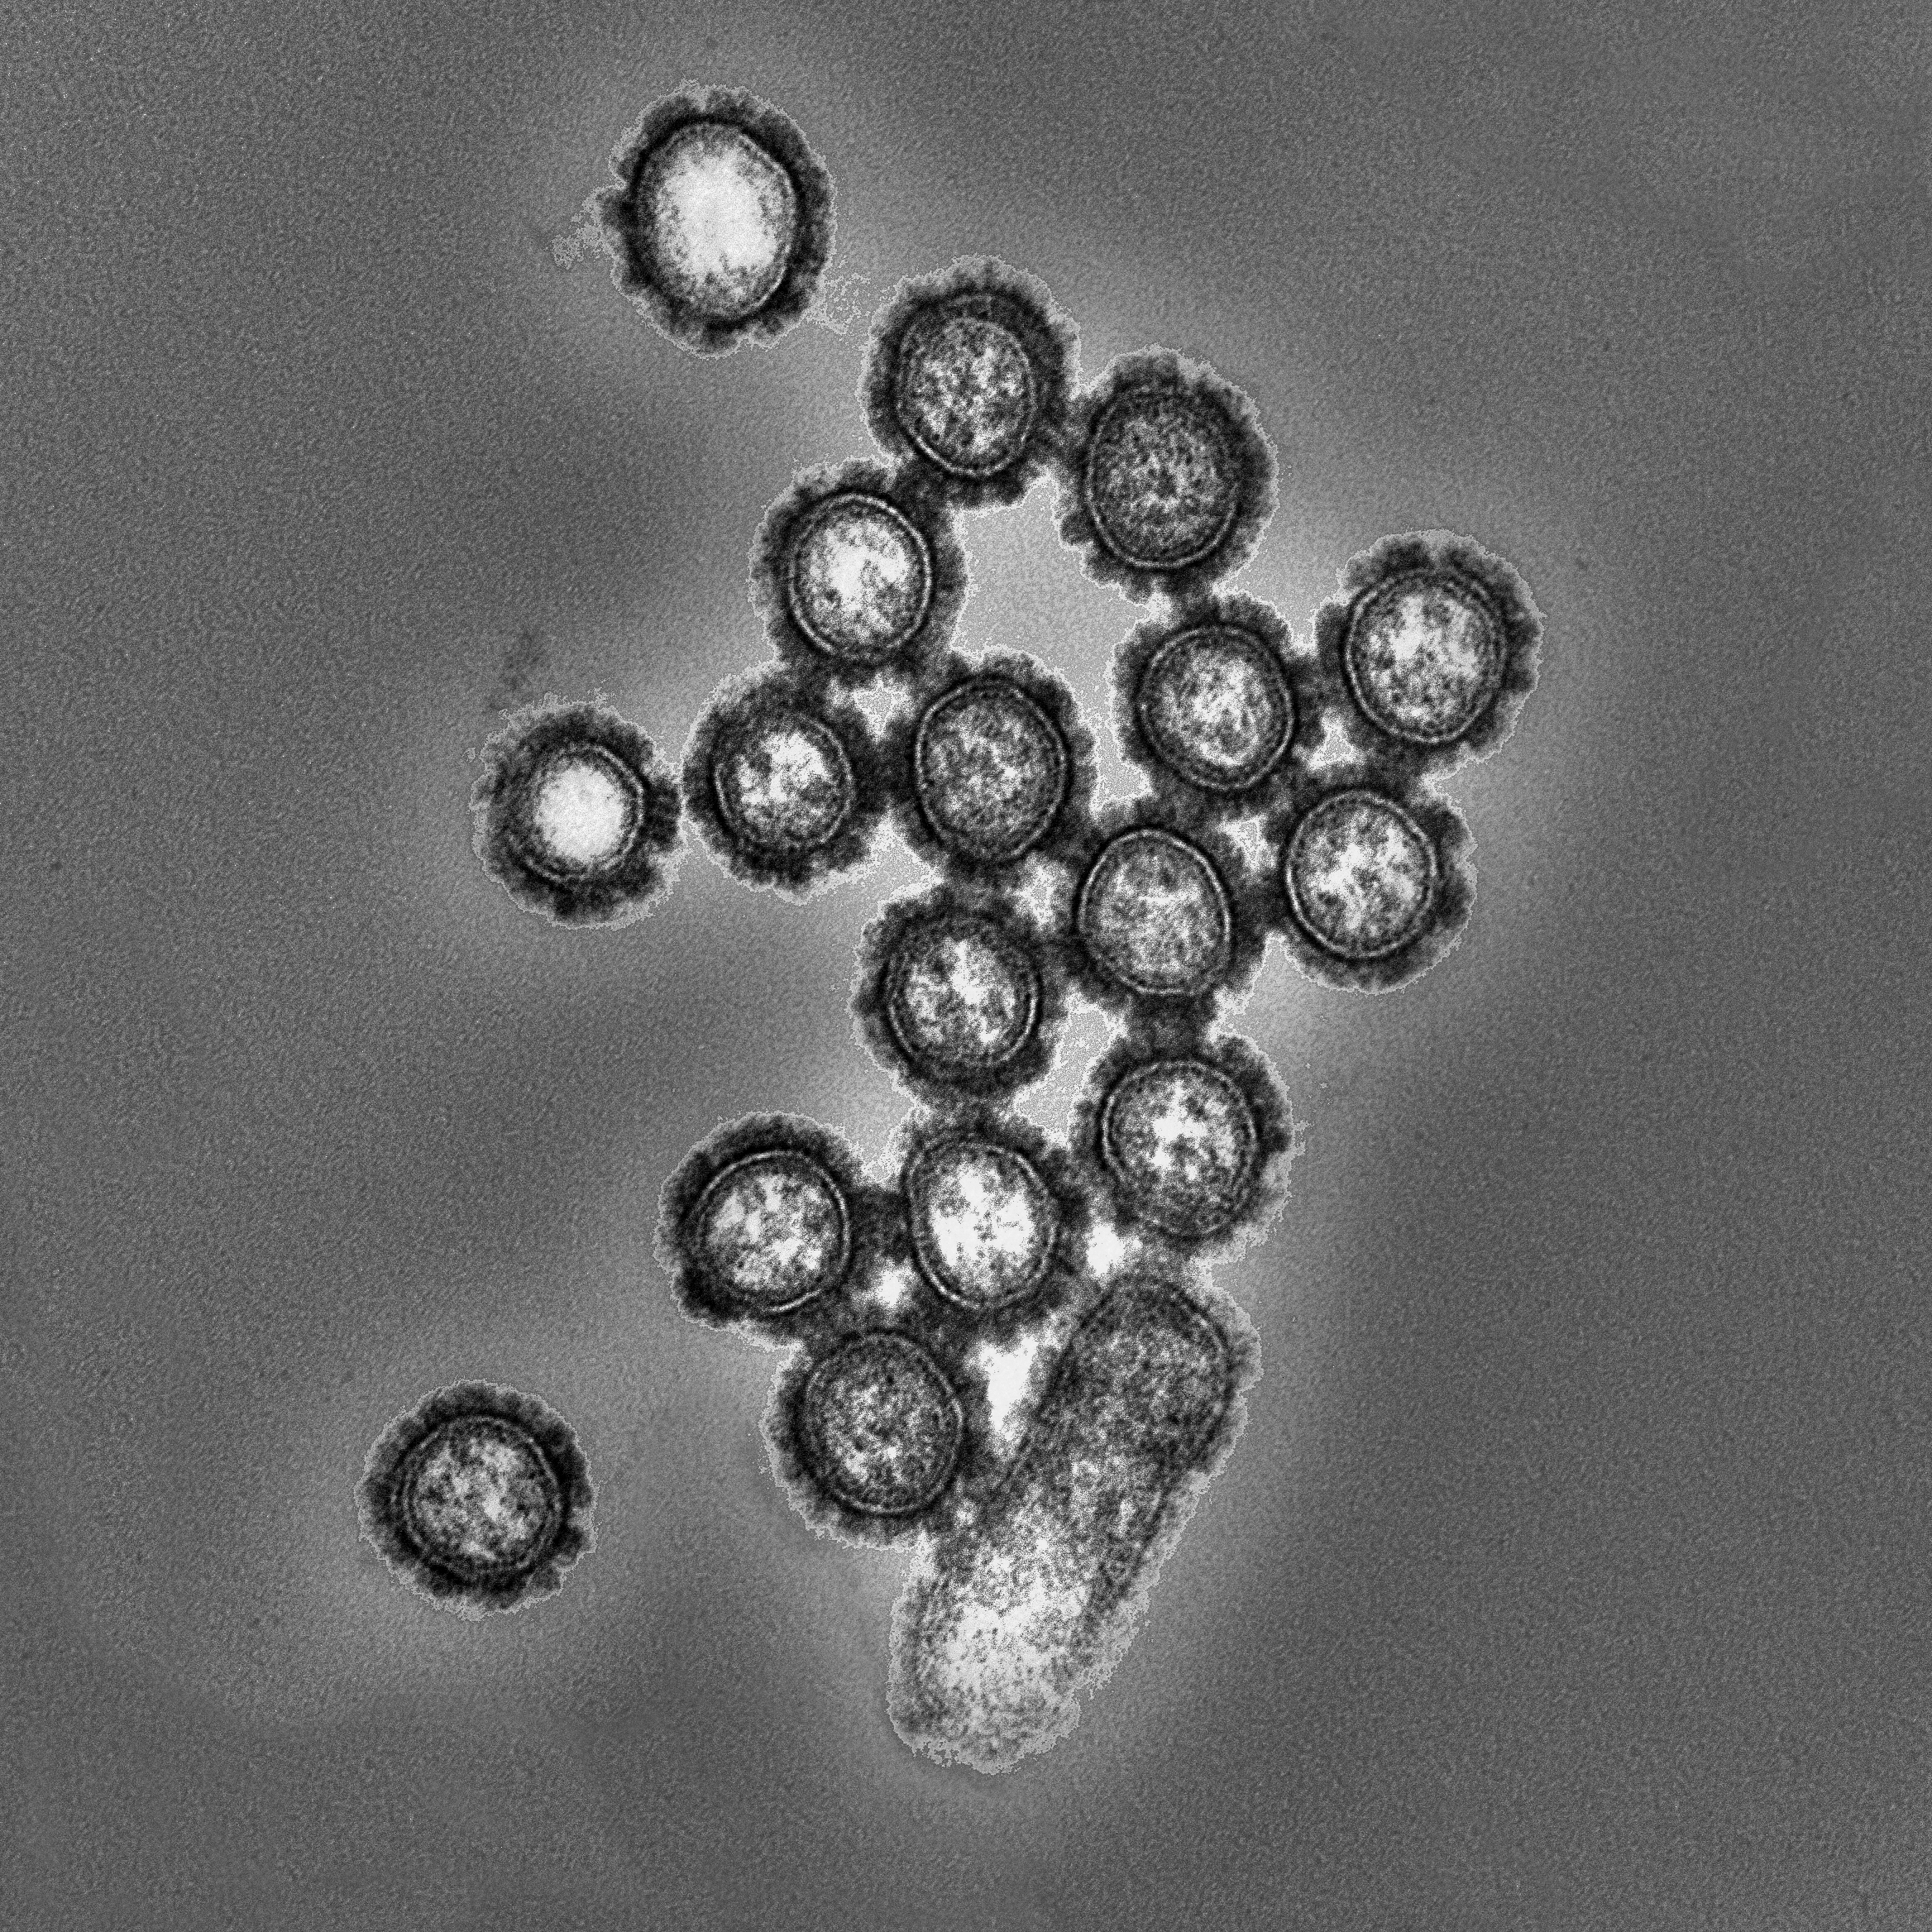 Figure 2 influenza virus particles